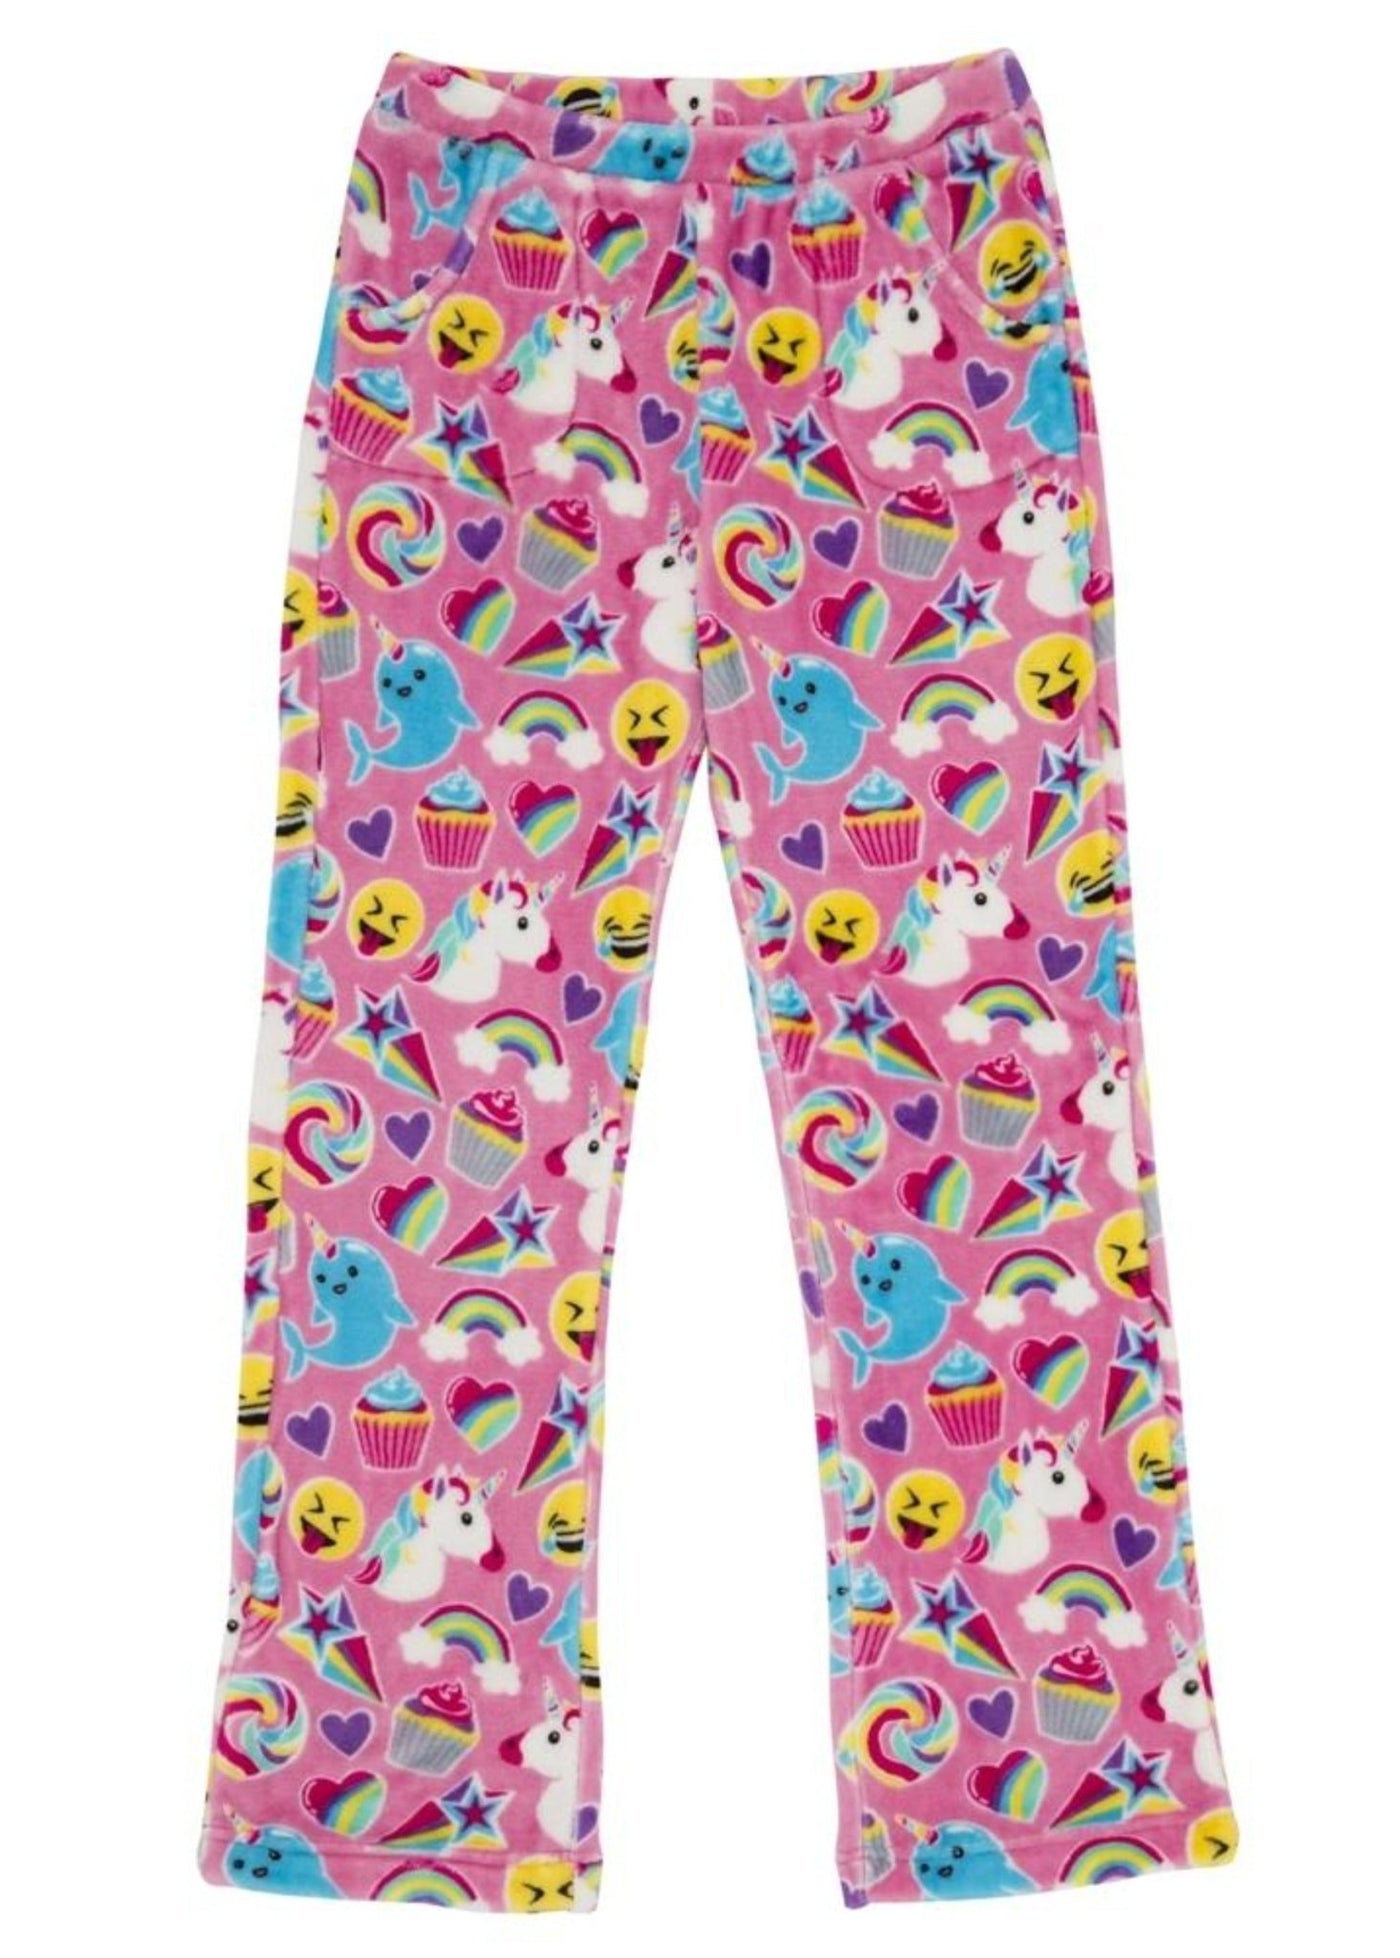 Candy Pink Fleece Pajama Bottoms in Pink Emoji Pattern